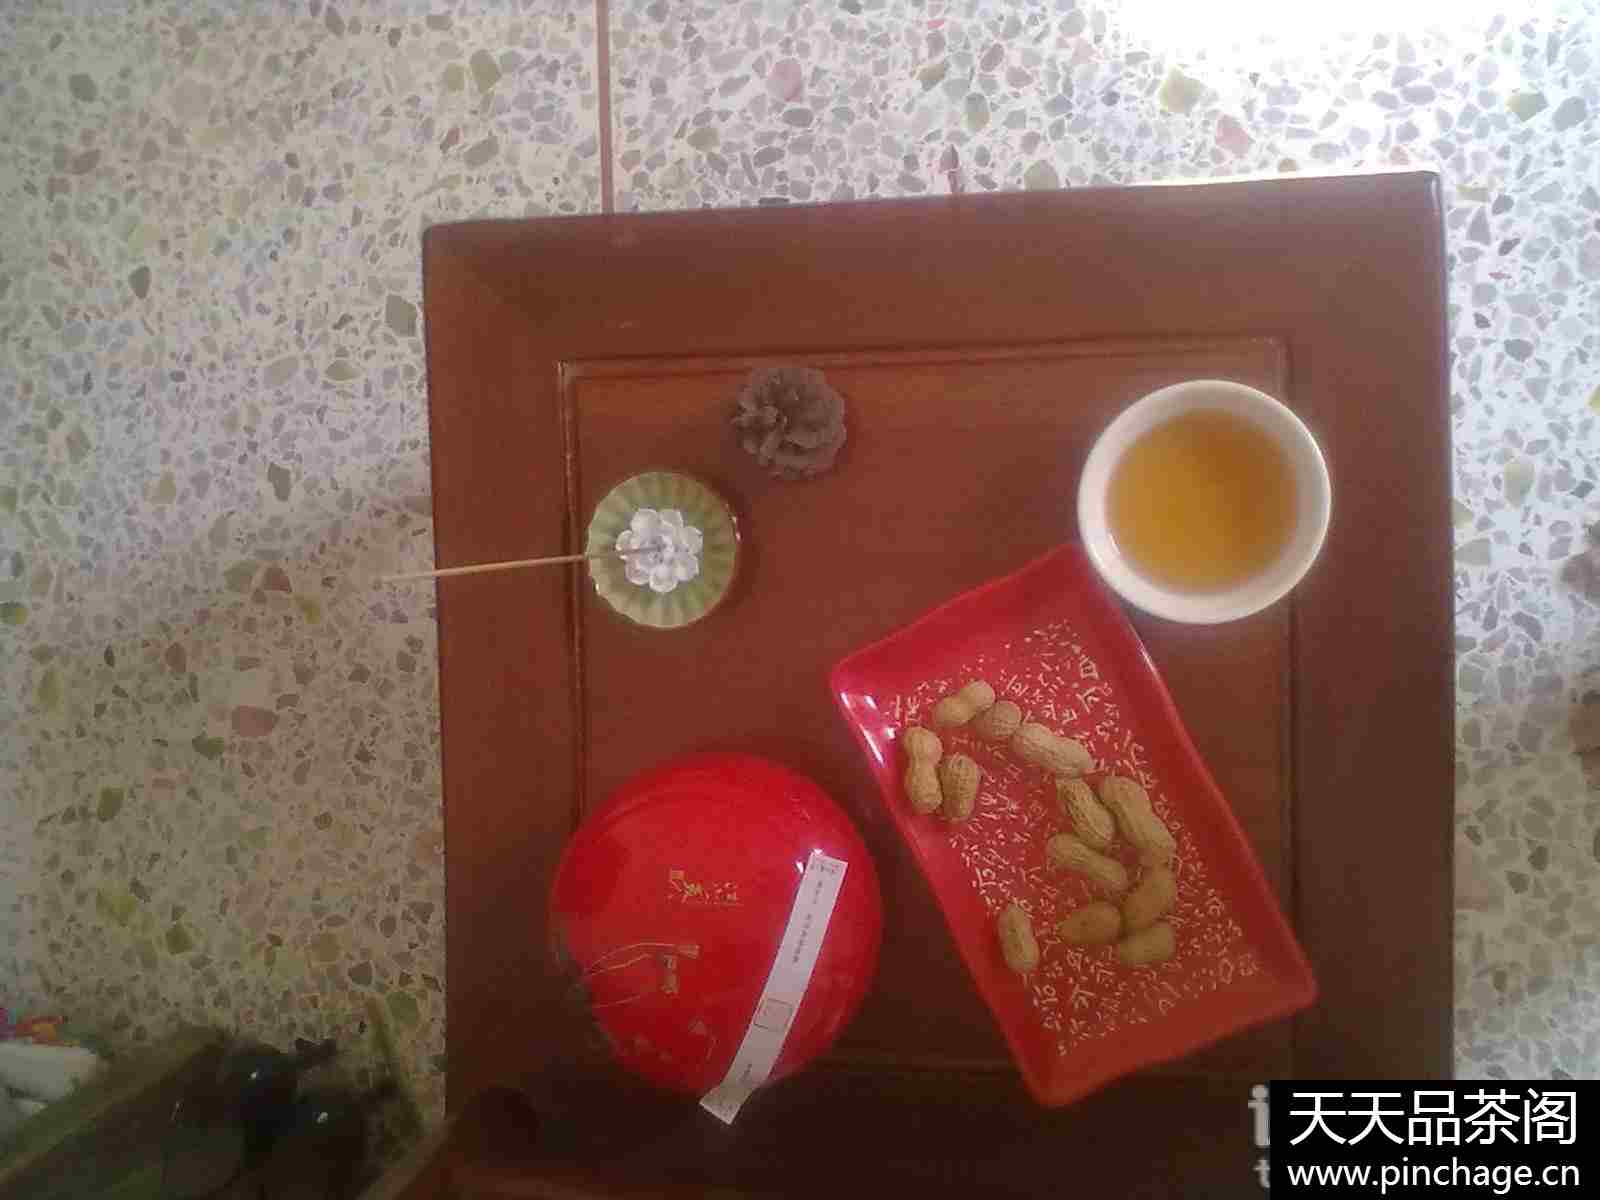 大红袍陶瓷茶叶罐装